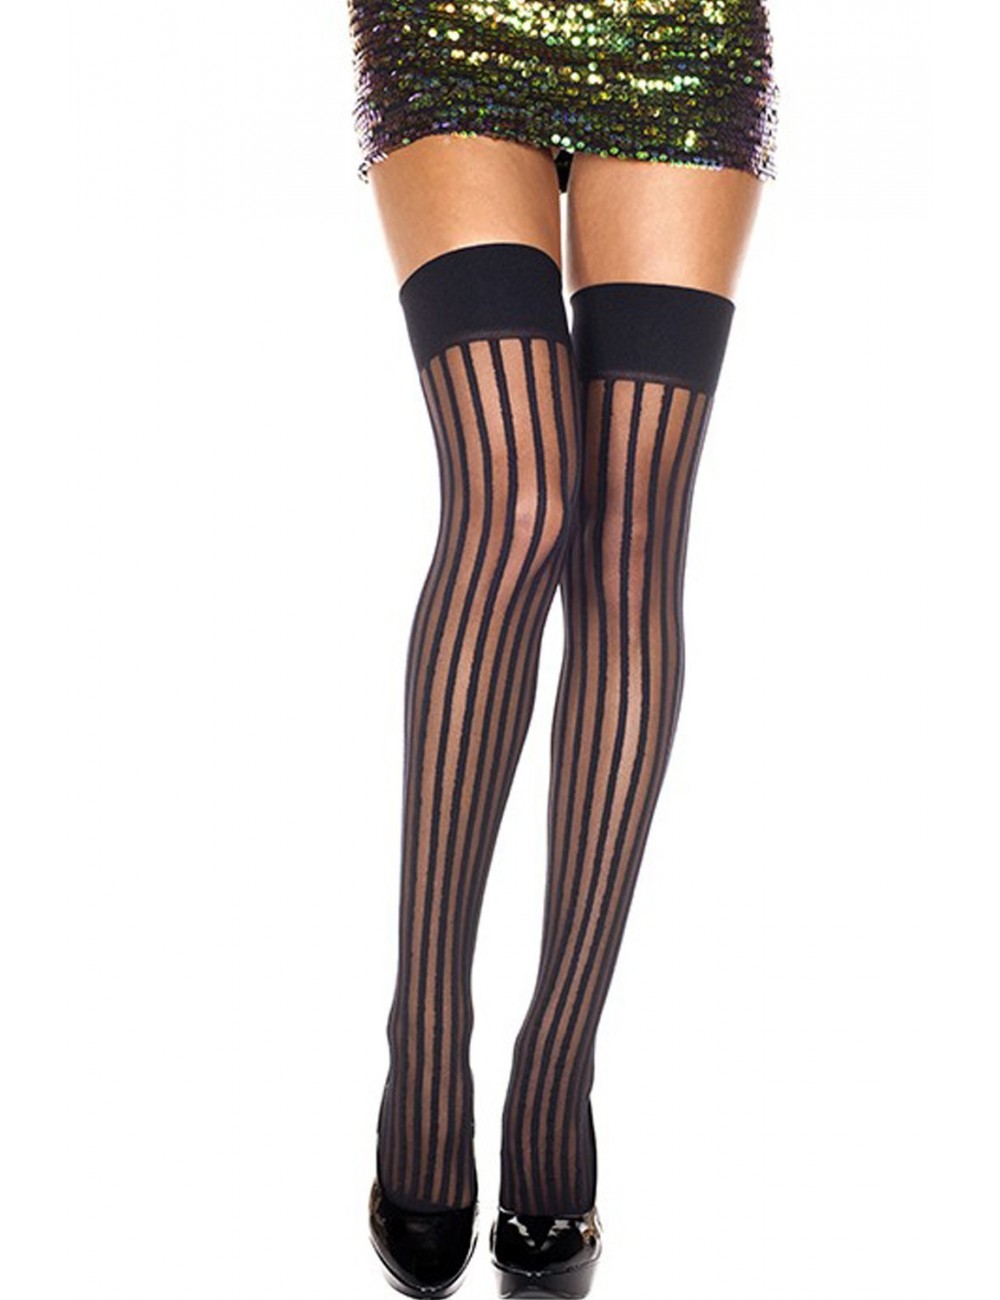 Lingerie - Bas - Bas sexy noire opaque avec lignes verticales - MH4231BLK - Music Legs